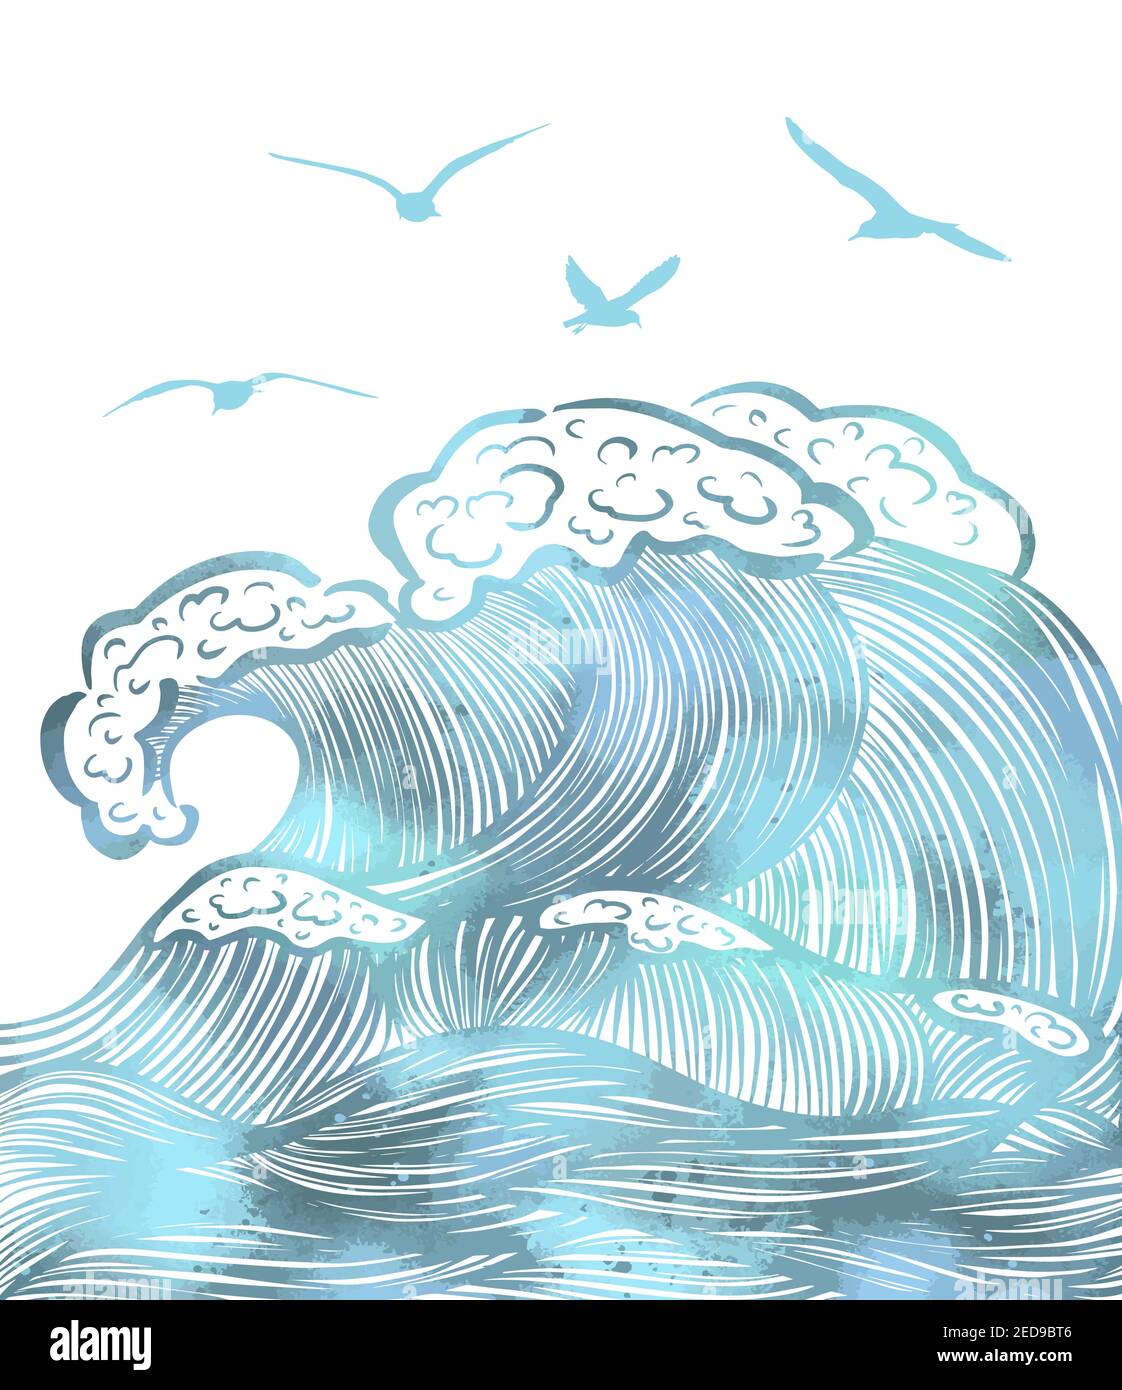 Motif vagues de mer. Illustration vectorielle d'une mer avec des vagues géantes Illustration de Vecteur